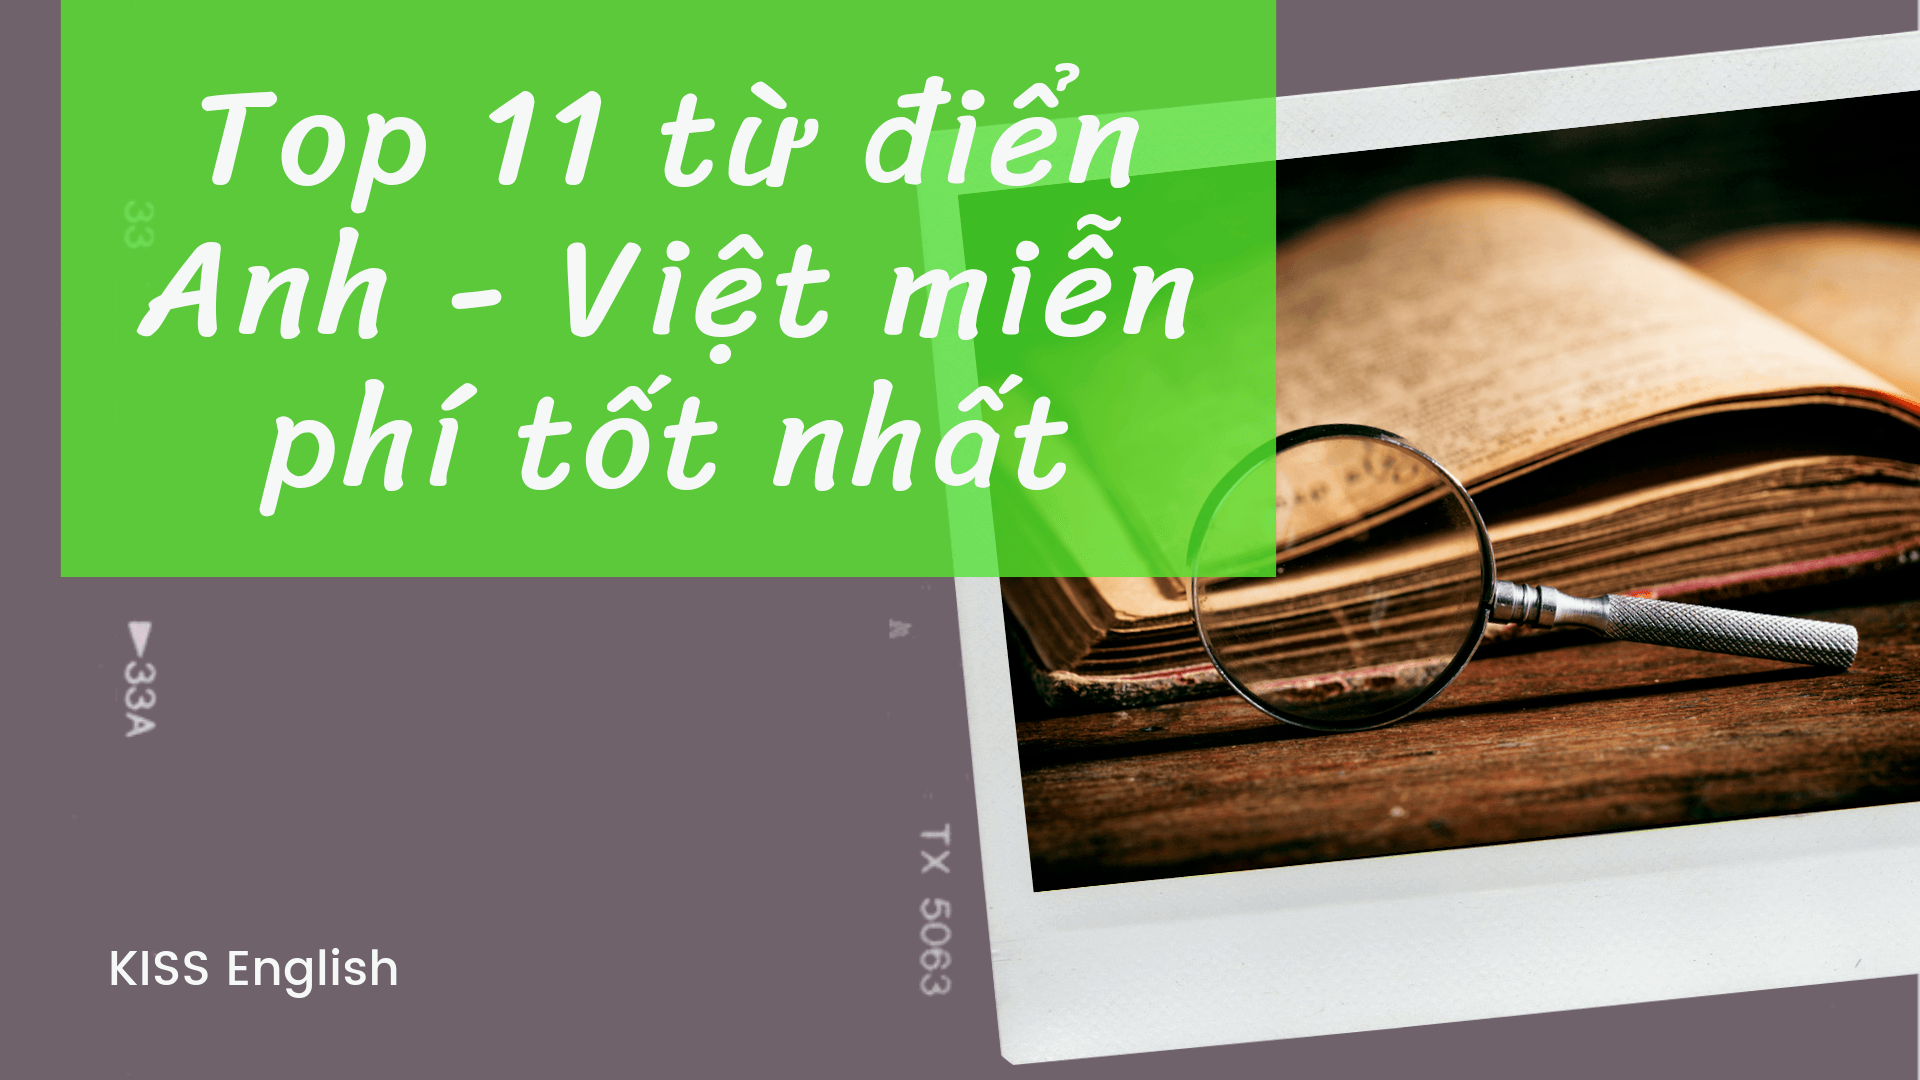 Top 11 từ điển Anh - Việt miễn phí tốt nhất